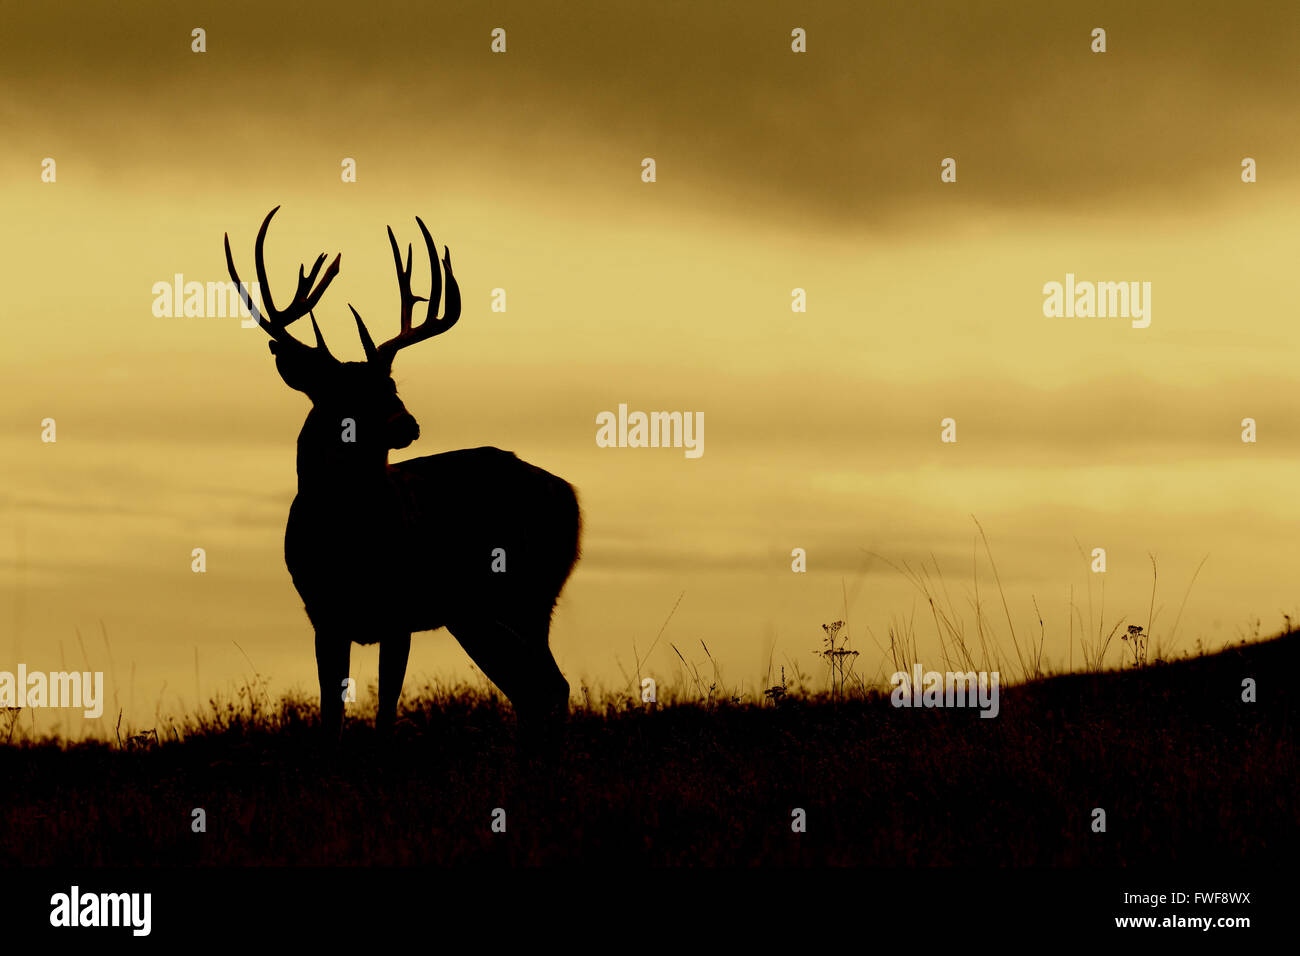 Culbianco buck di cervo con grandi corna di cervo in piedi contro un bellissimo cielo con nuvole a più livelli Foto Stock